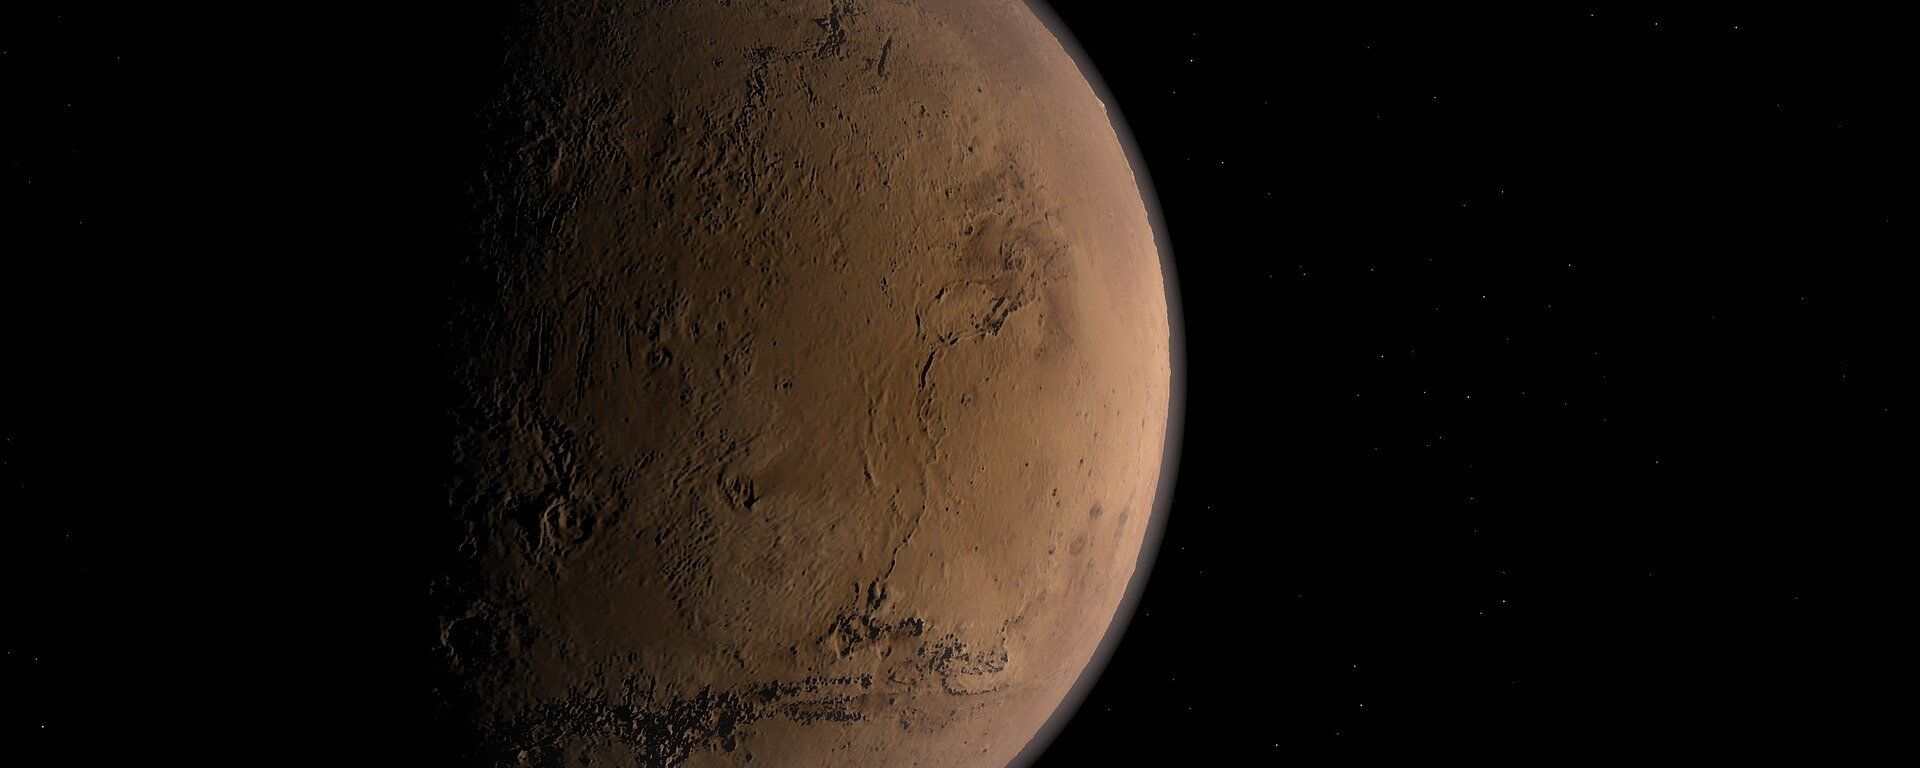 Marte (imagen referencial) - Sputnik Mundo, 1920, 21.02.2021